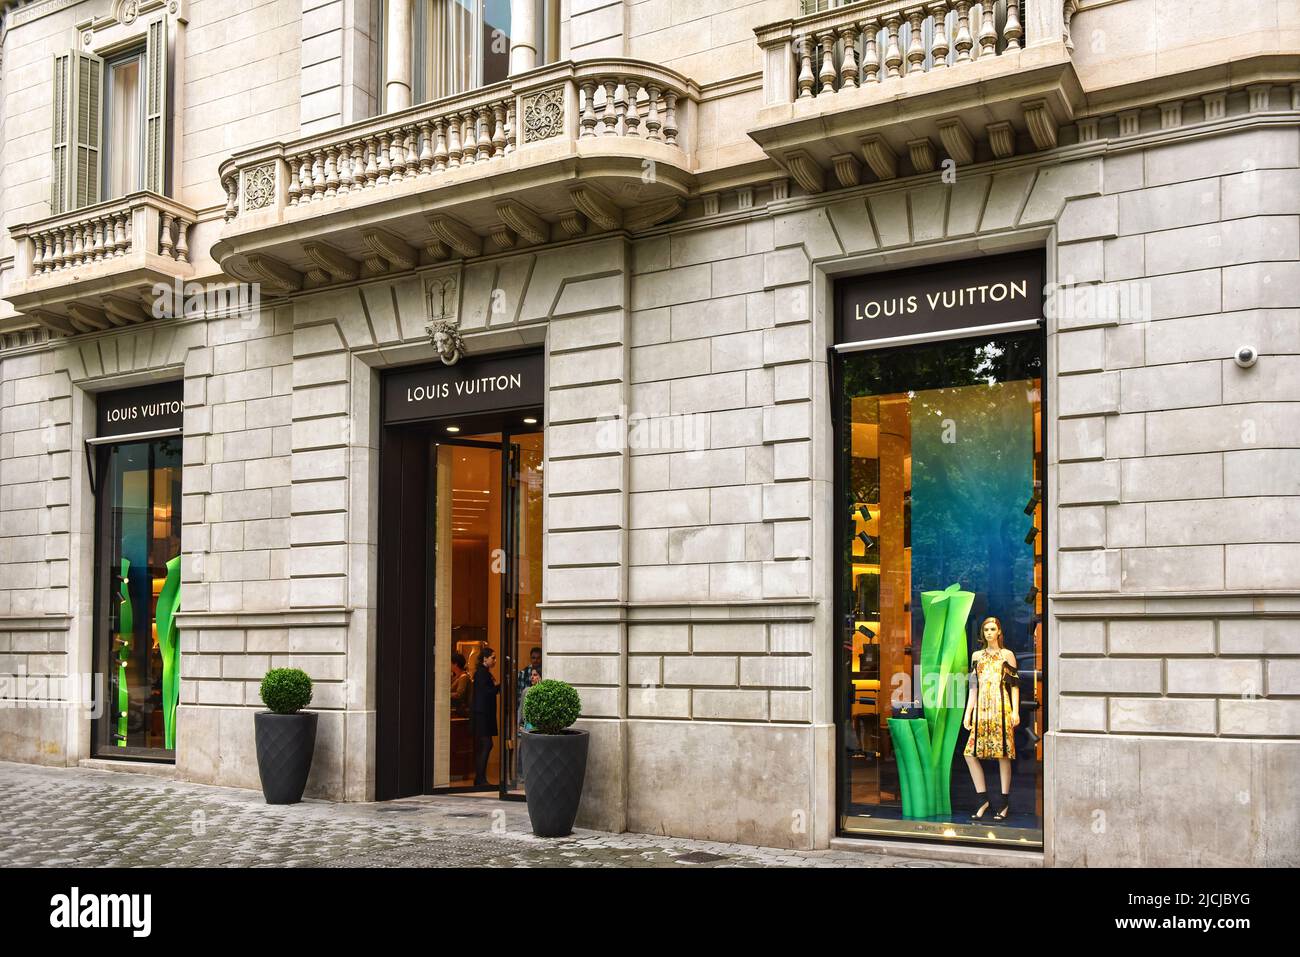 Barcelona, Spanien - 5. Mai 2018: Louis Vuitton, das französische Luxusmodehaus, das 1854 gegründet wurde, befindet sich am Paseo de Gràcia, einem exklusiven Einkaufsviertel. Stockfoto